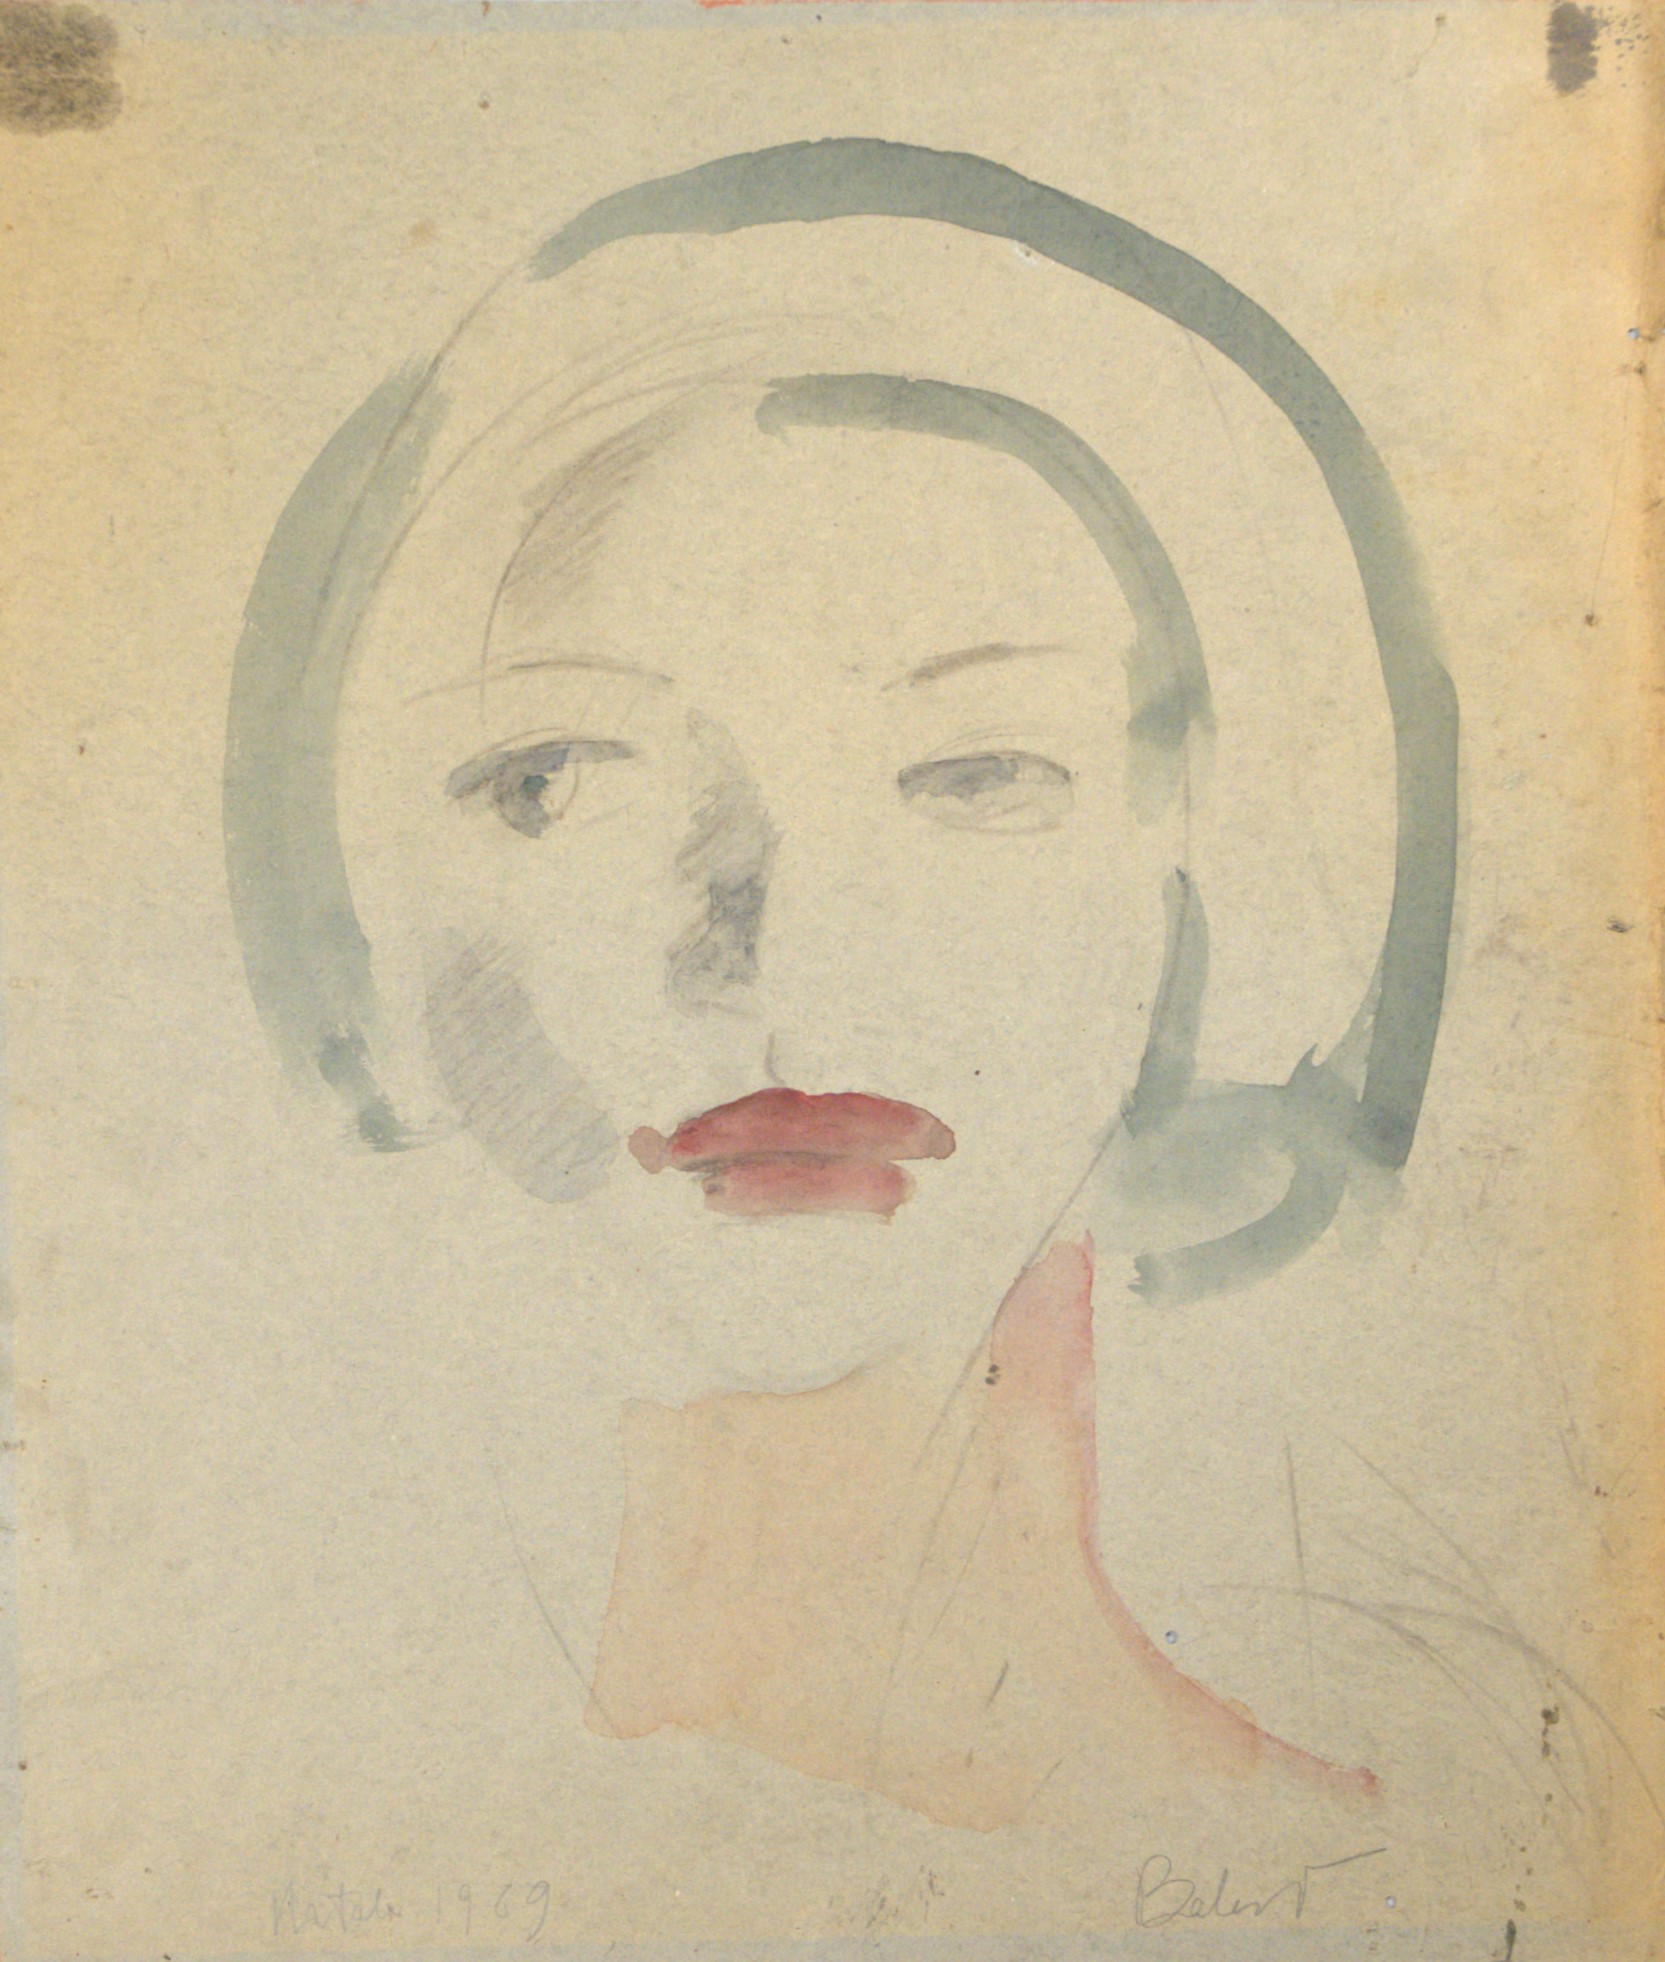 Balest Corrado - Sospirolo (BL), 1923